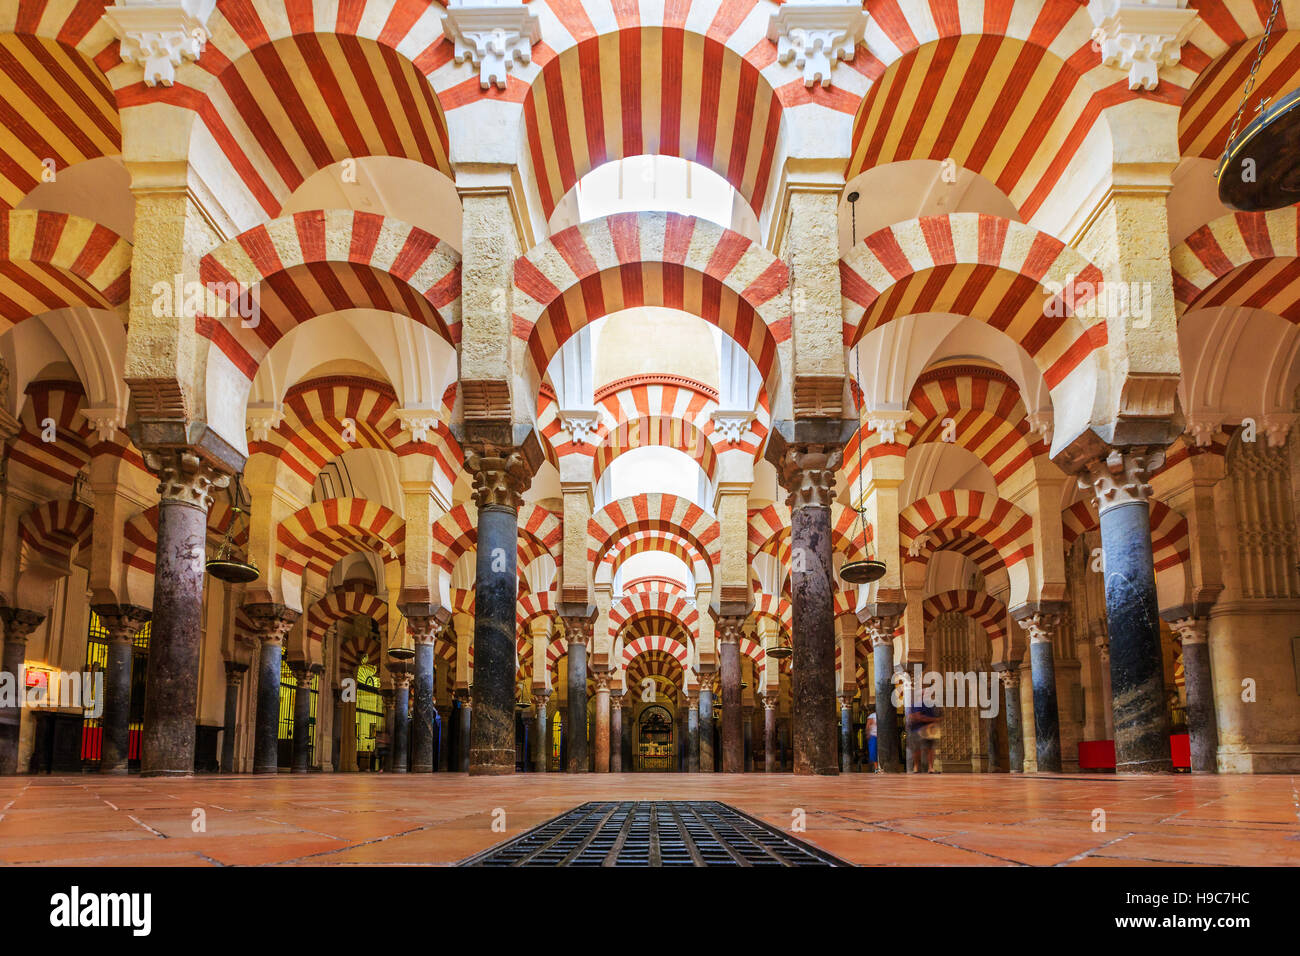 Córdoba, Spanien. Innenansicht der Kathedrale La Mezquita. Innerhalb einer ehemaligen Moschee errichtet. Stockfoto